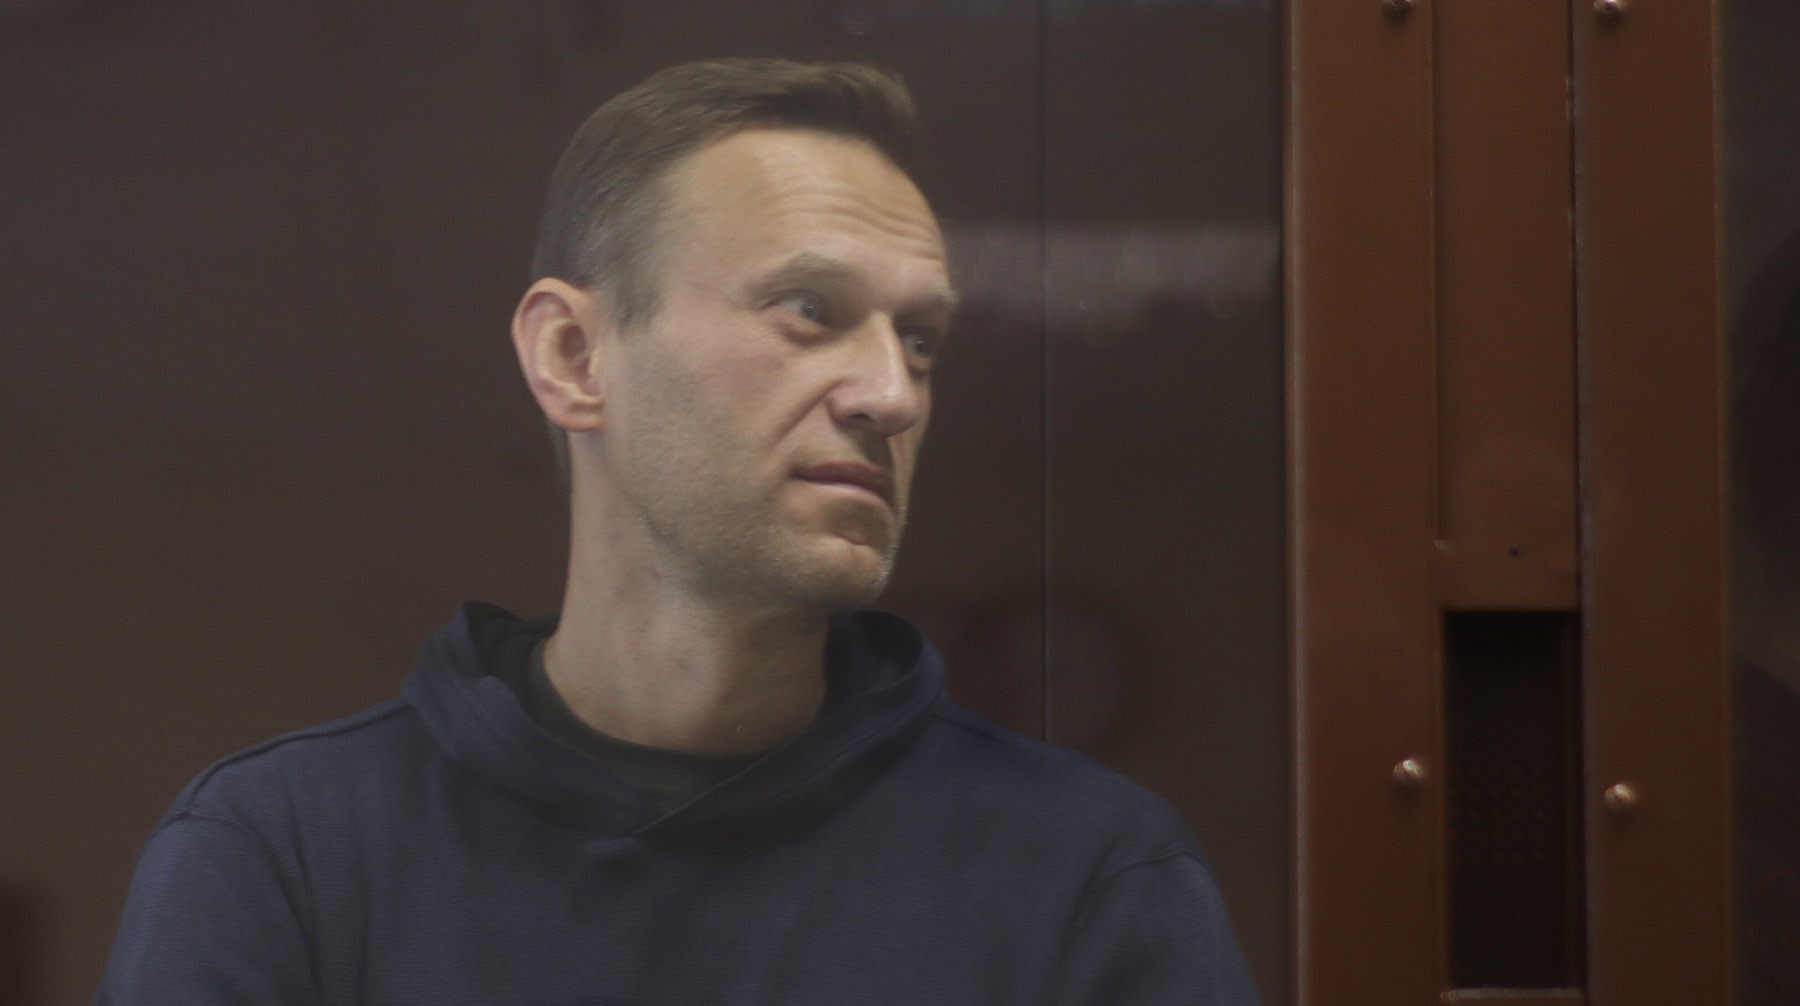 Dailystorm - Навального переводят из ИК-2 в областную больницу для осужденных